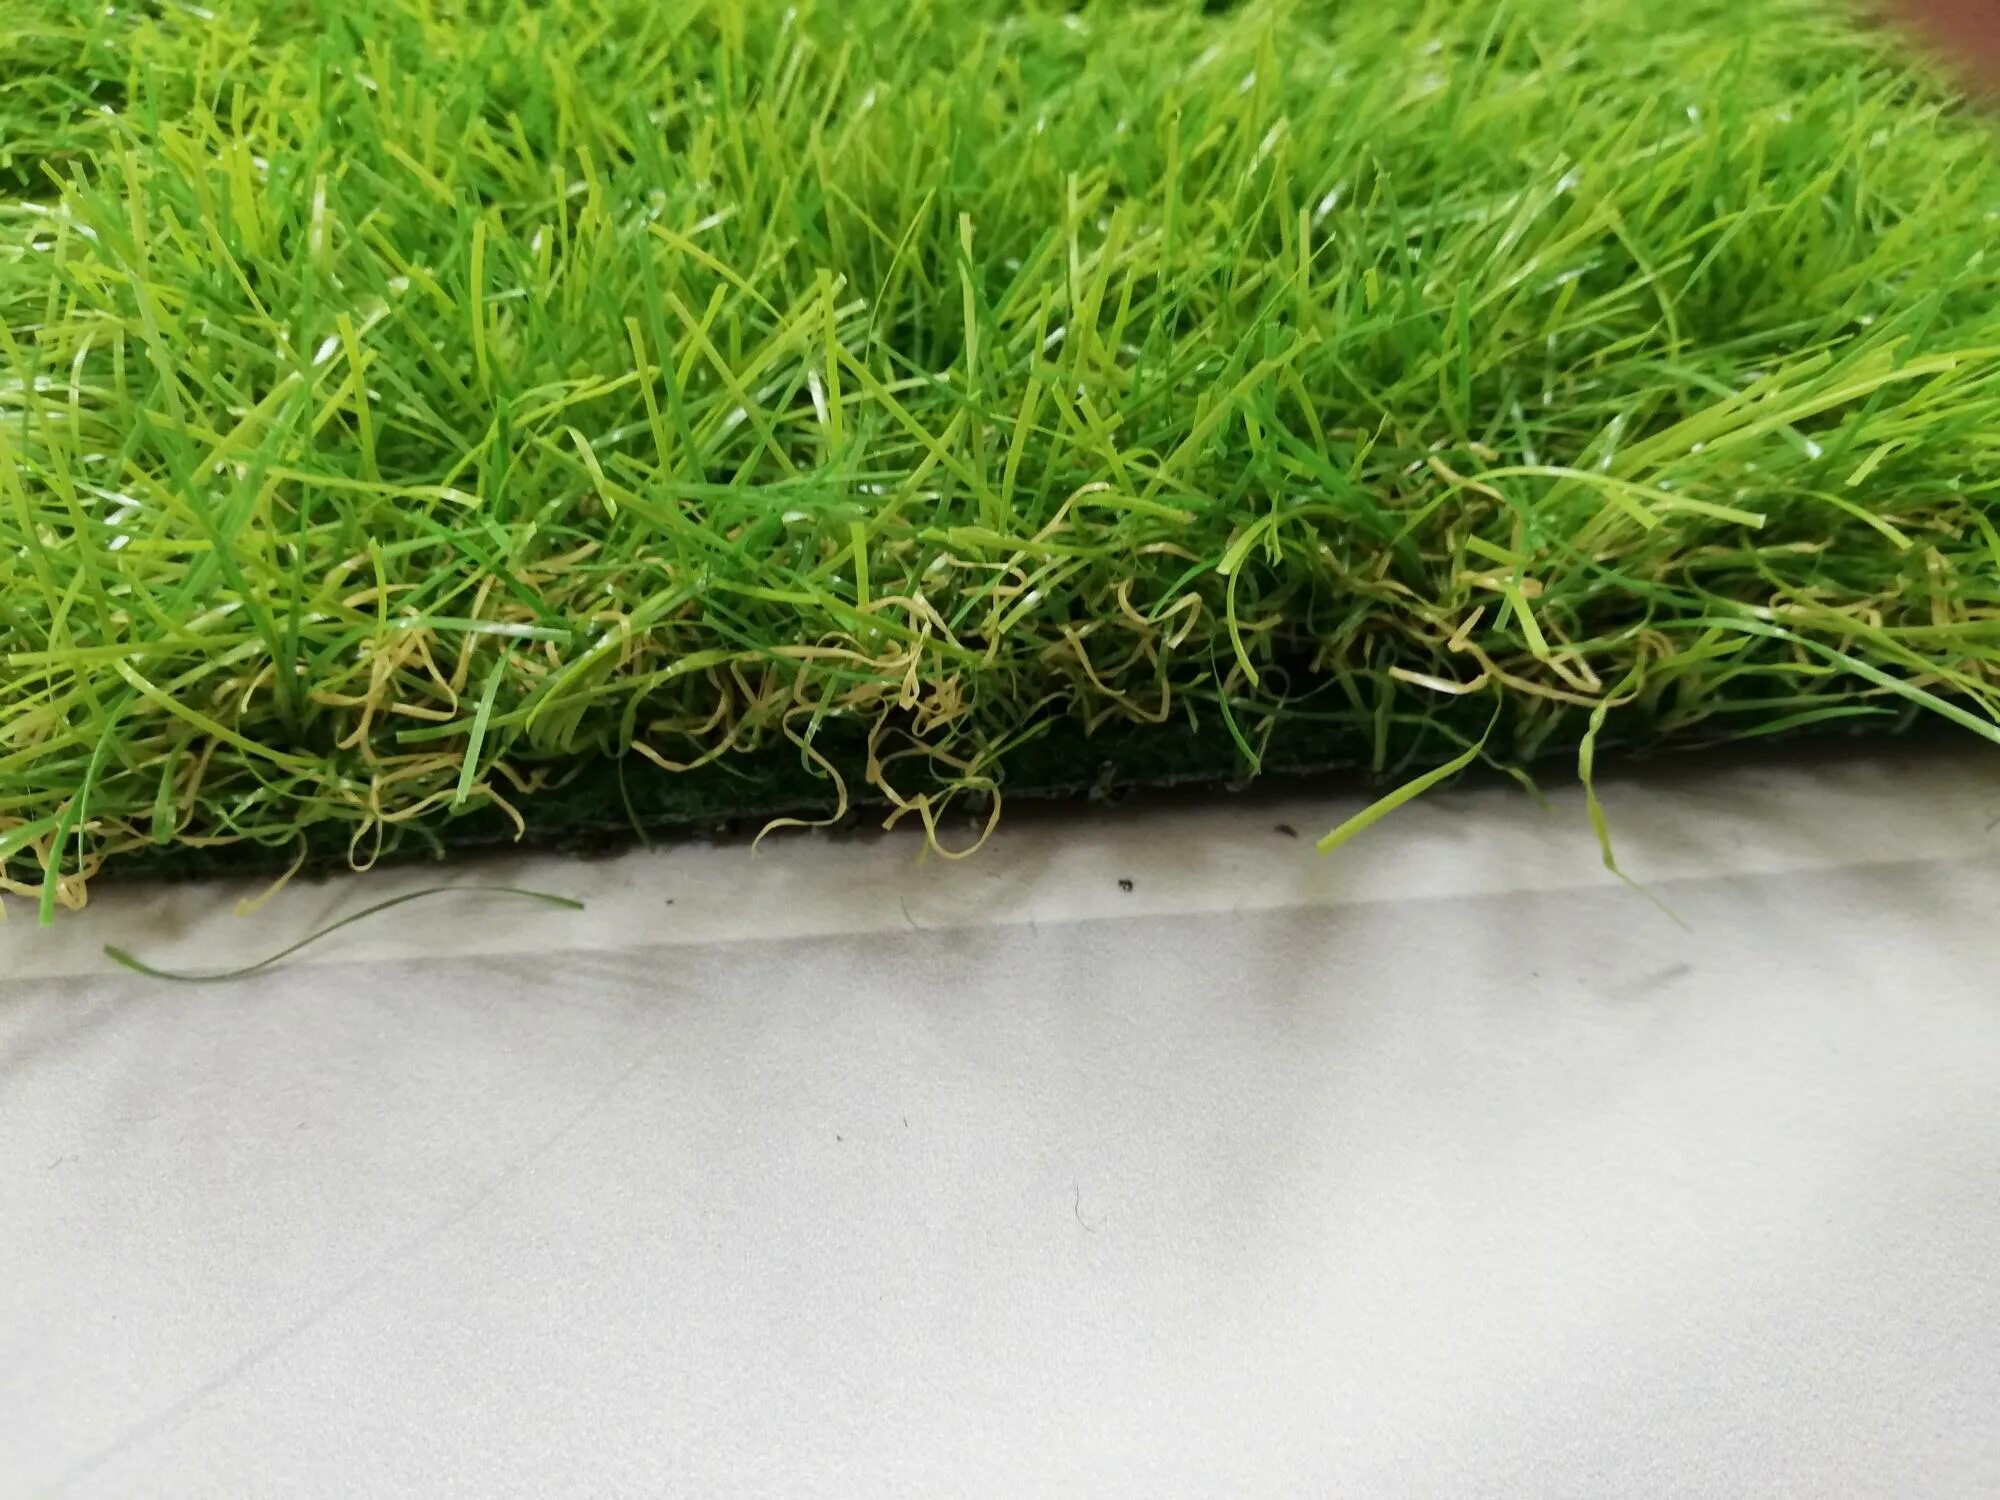 Газон Леруа Мерлен. Искусственный газон Леруа Мерлен. Искусственная трава 40 мм. Леруа Мерлен искусственная трава покрытие. Купить траву в леруа мерлен